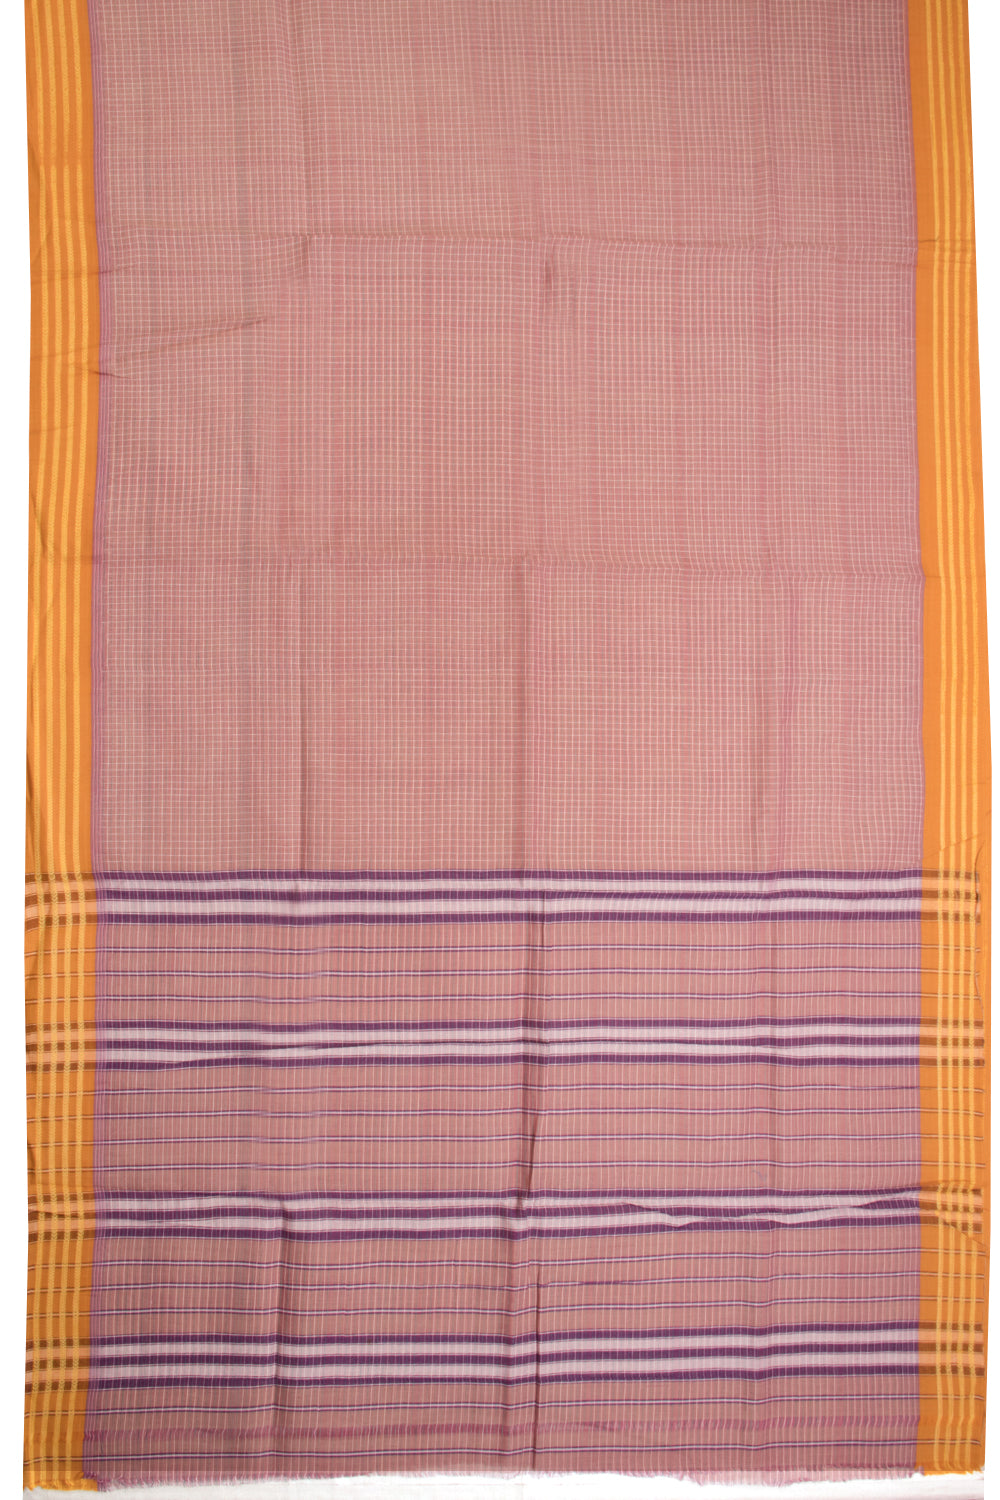 Mauve Handloom Narayanpet Cotton Saree Without Blouse 10064384 - Avishya